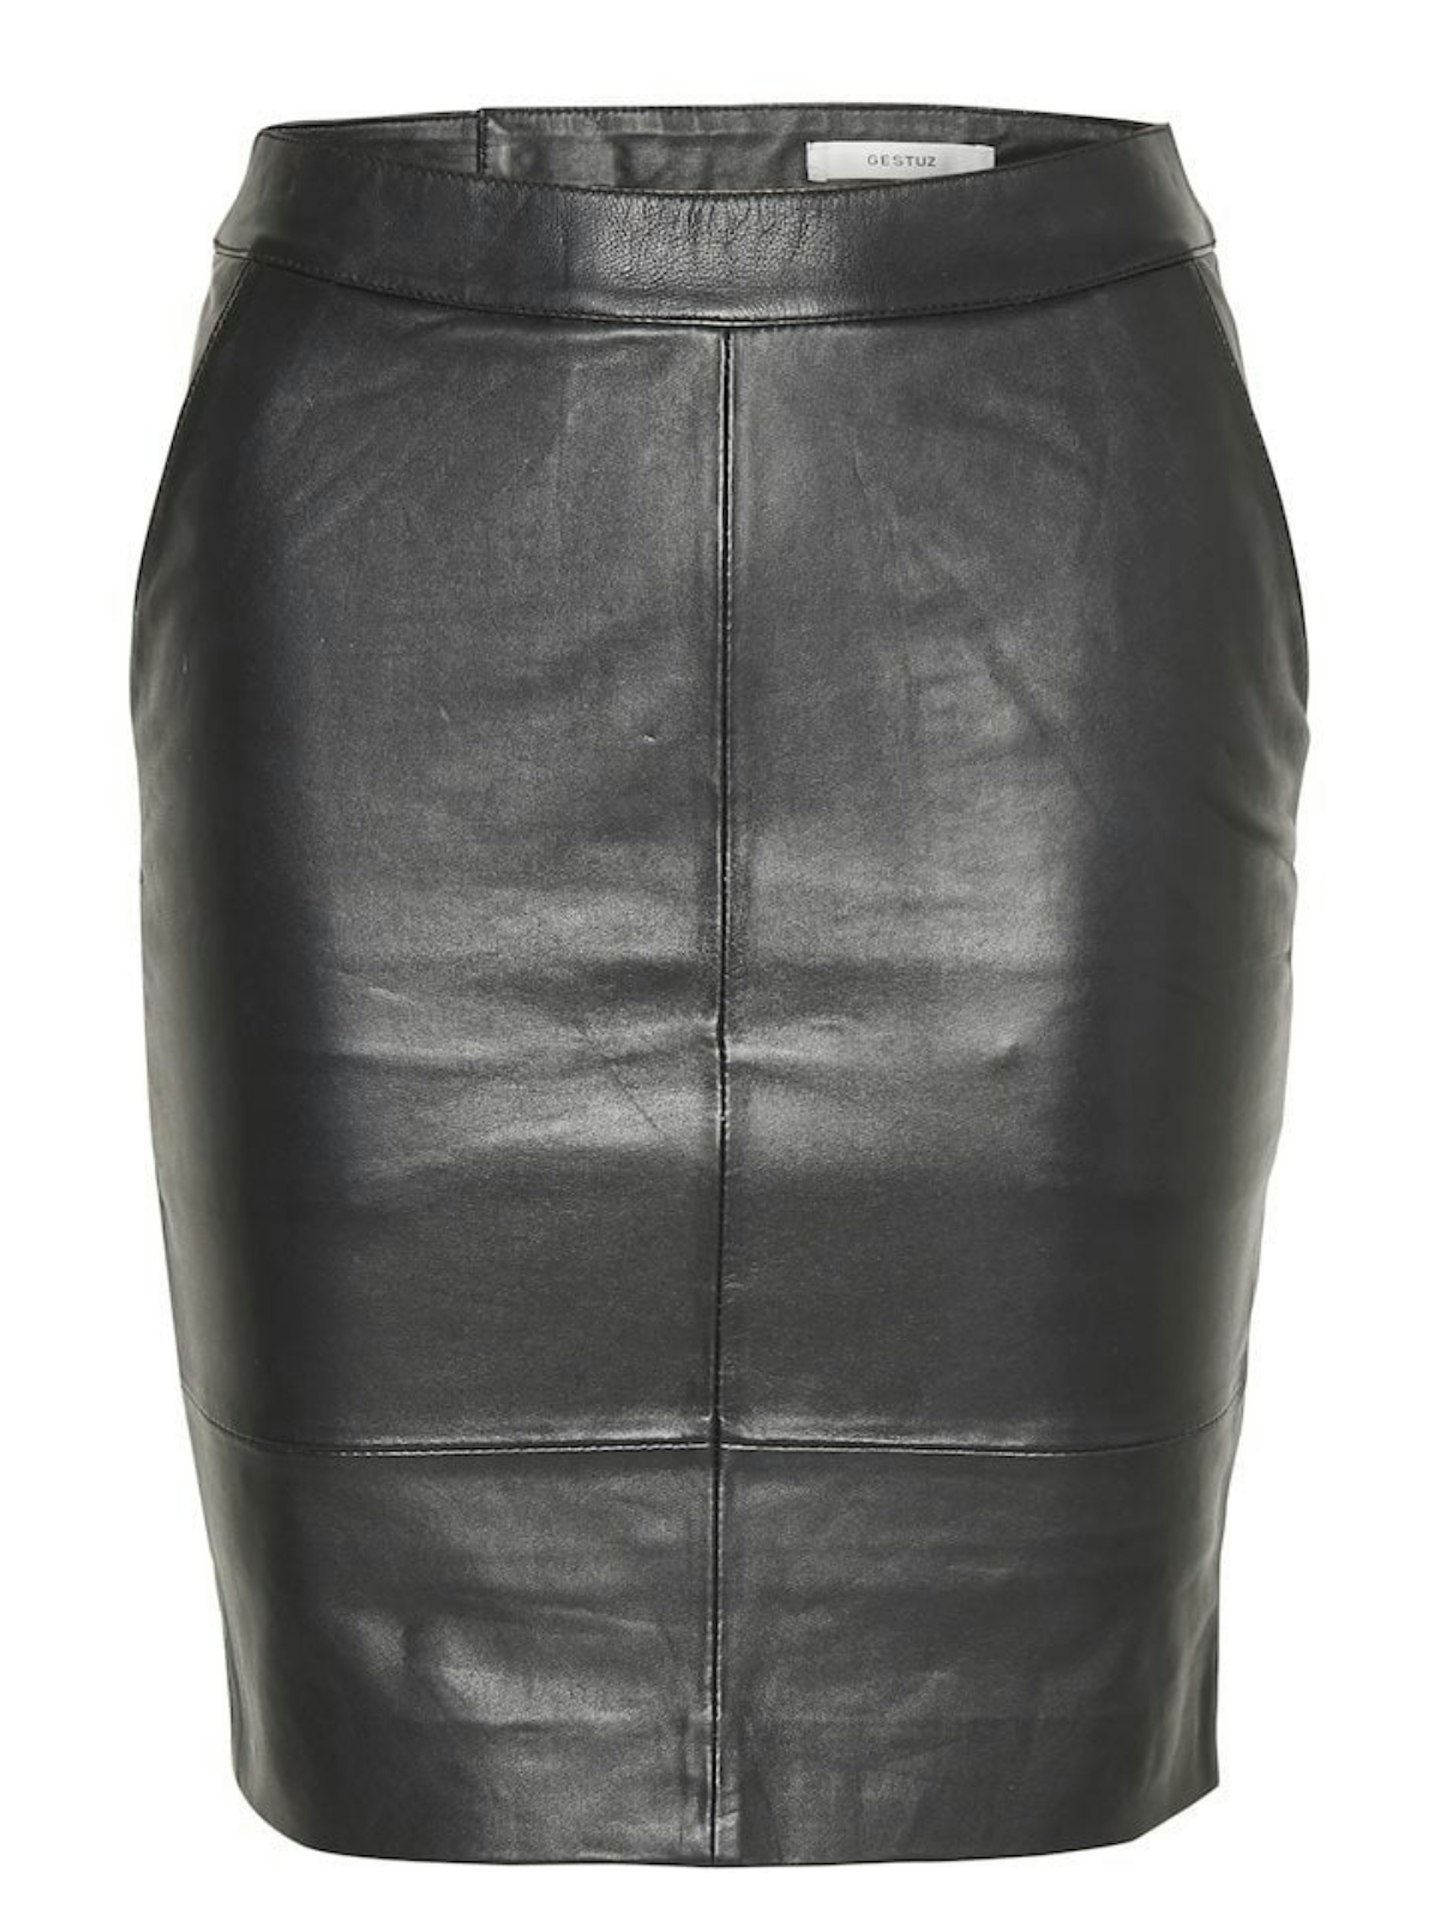 Gestuz, CharGZ Leather Skirt